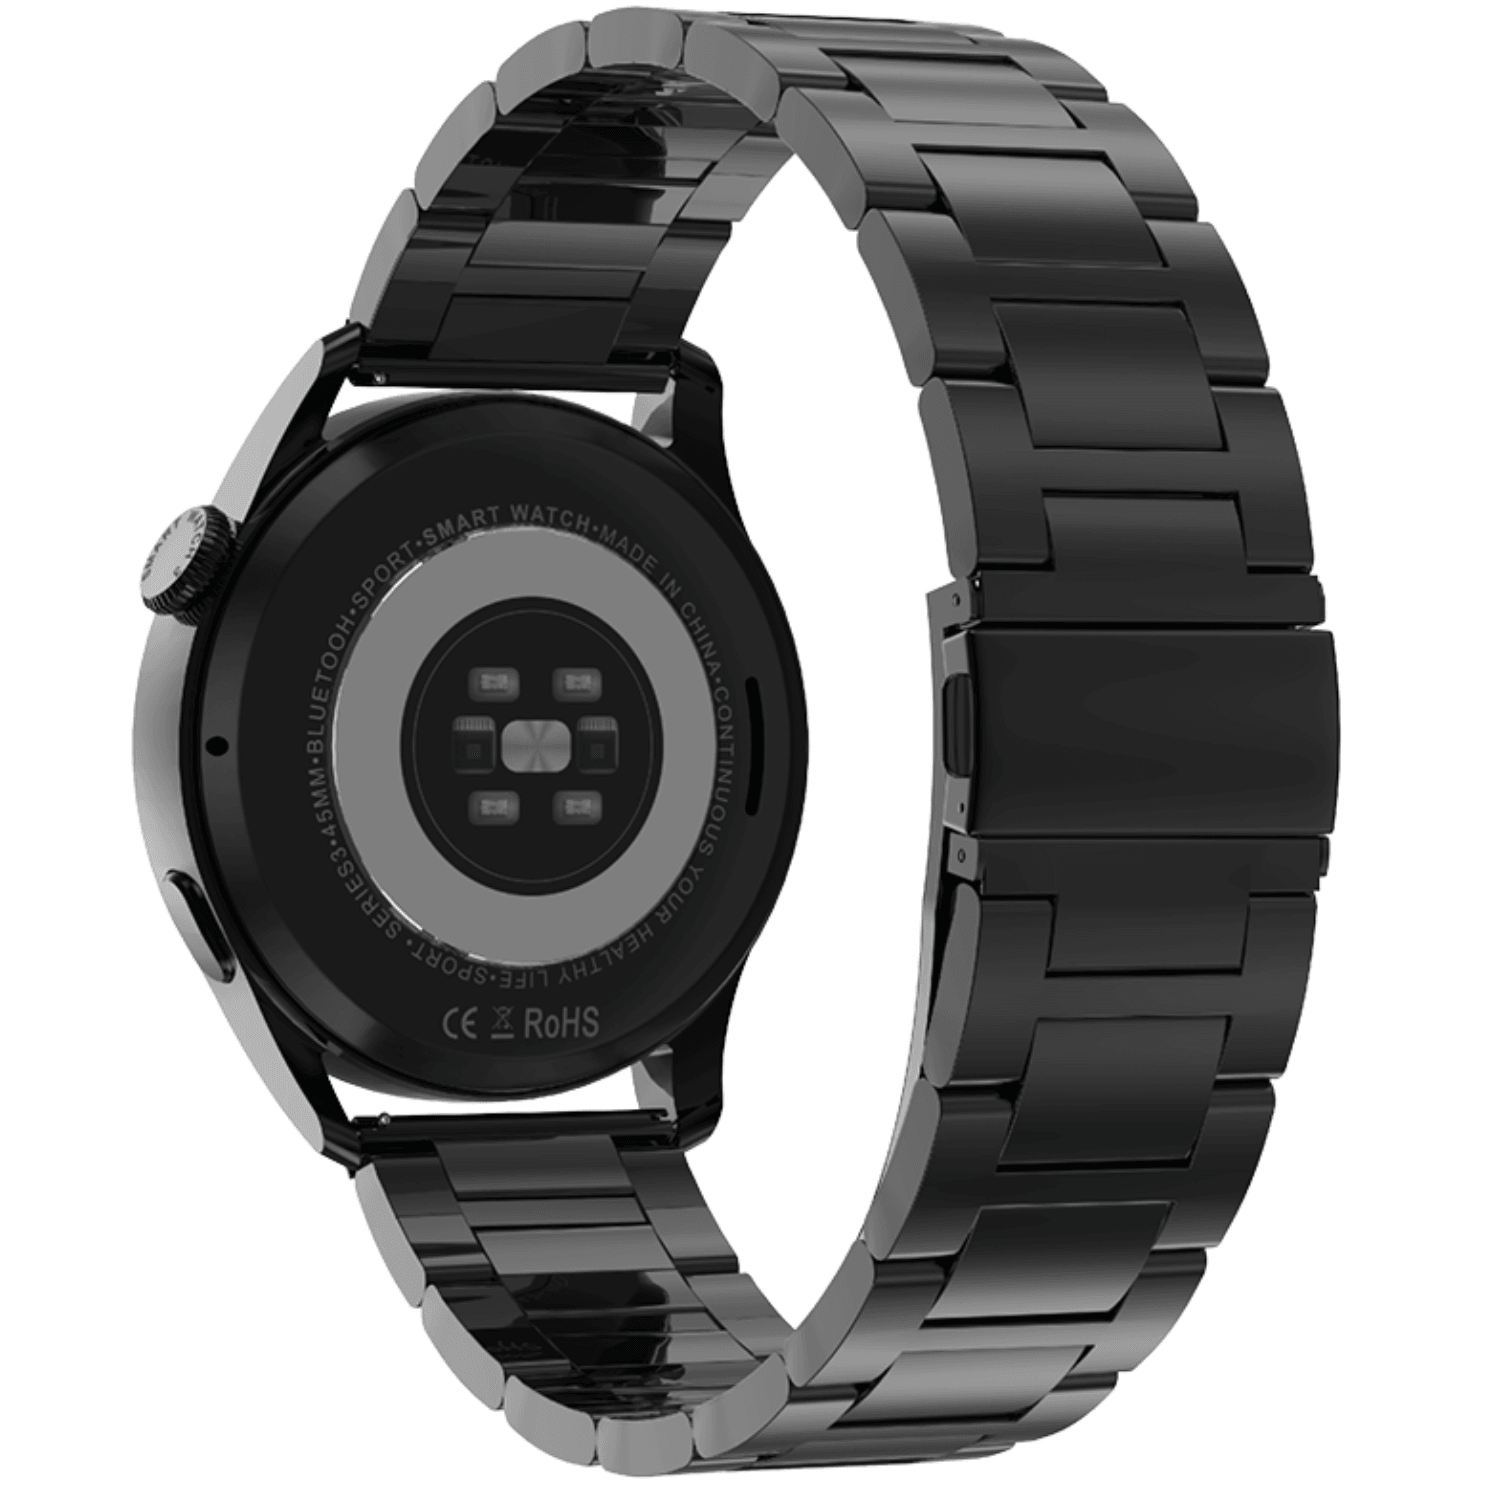 Ρολόι Smartwatch DAS4 Black Steel SP40 203080031, με μαύρο μπρασελέ, πίσω όψη. Διαθέτει πολλαπλές λειτουργίες.